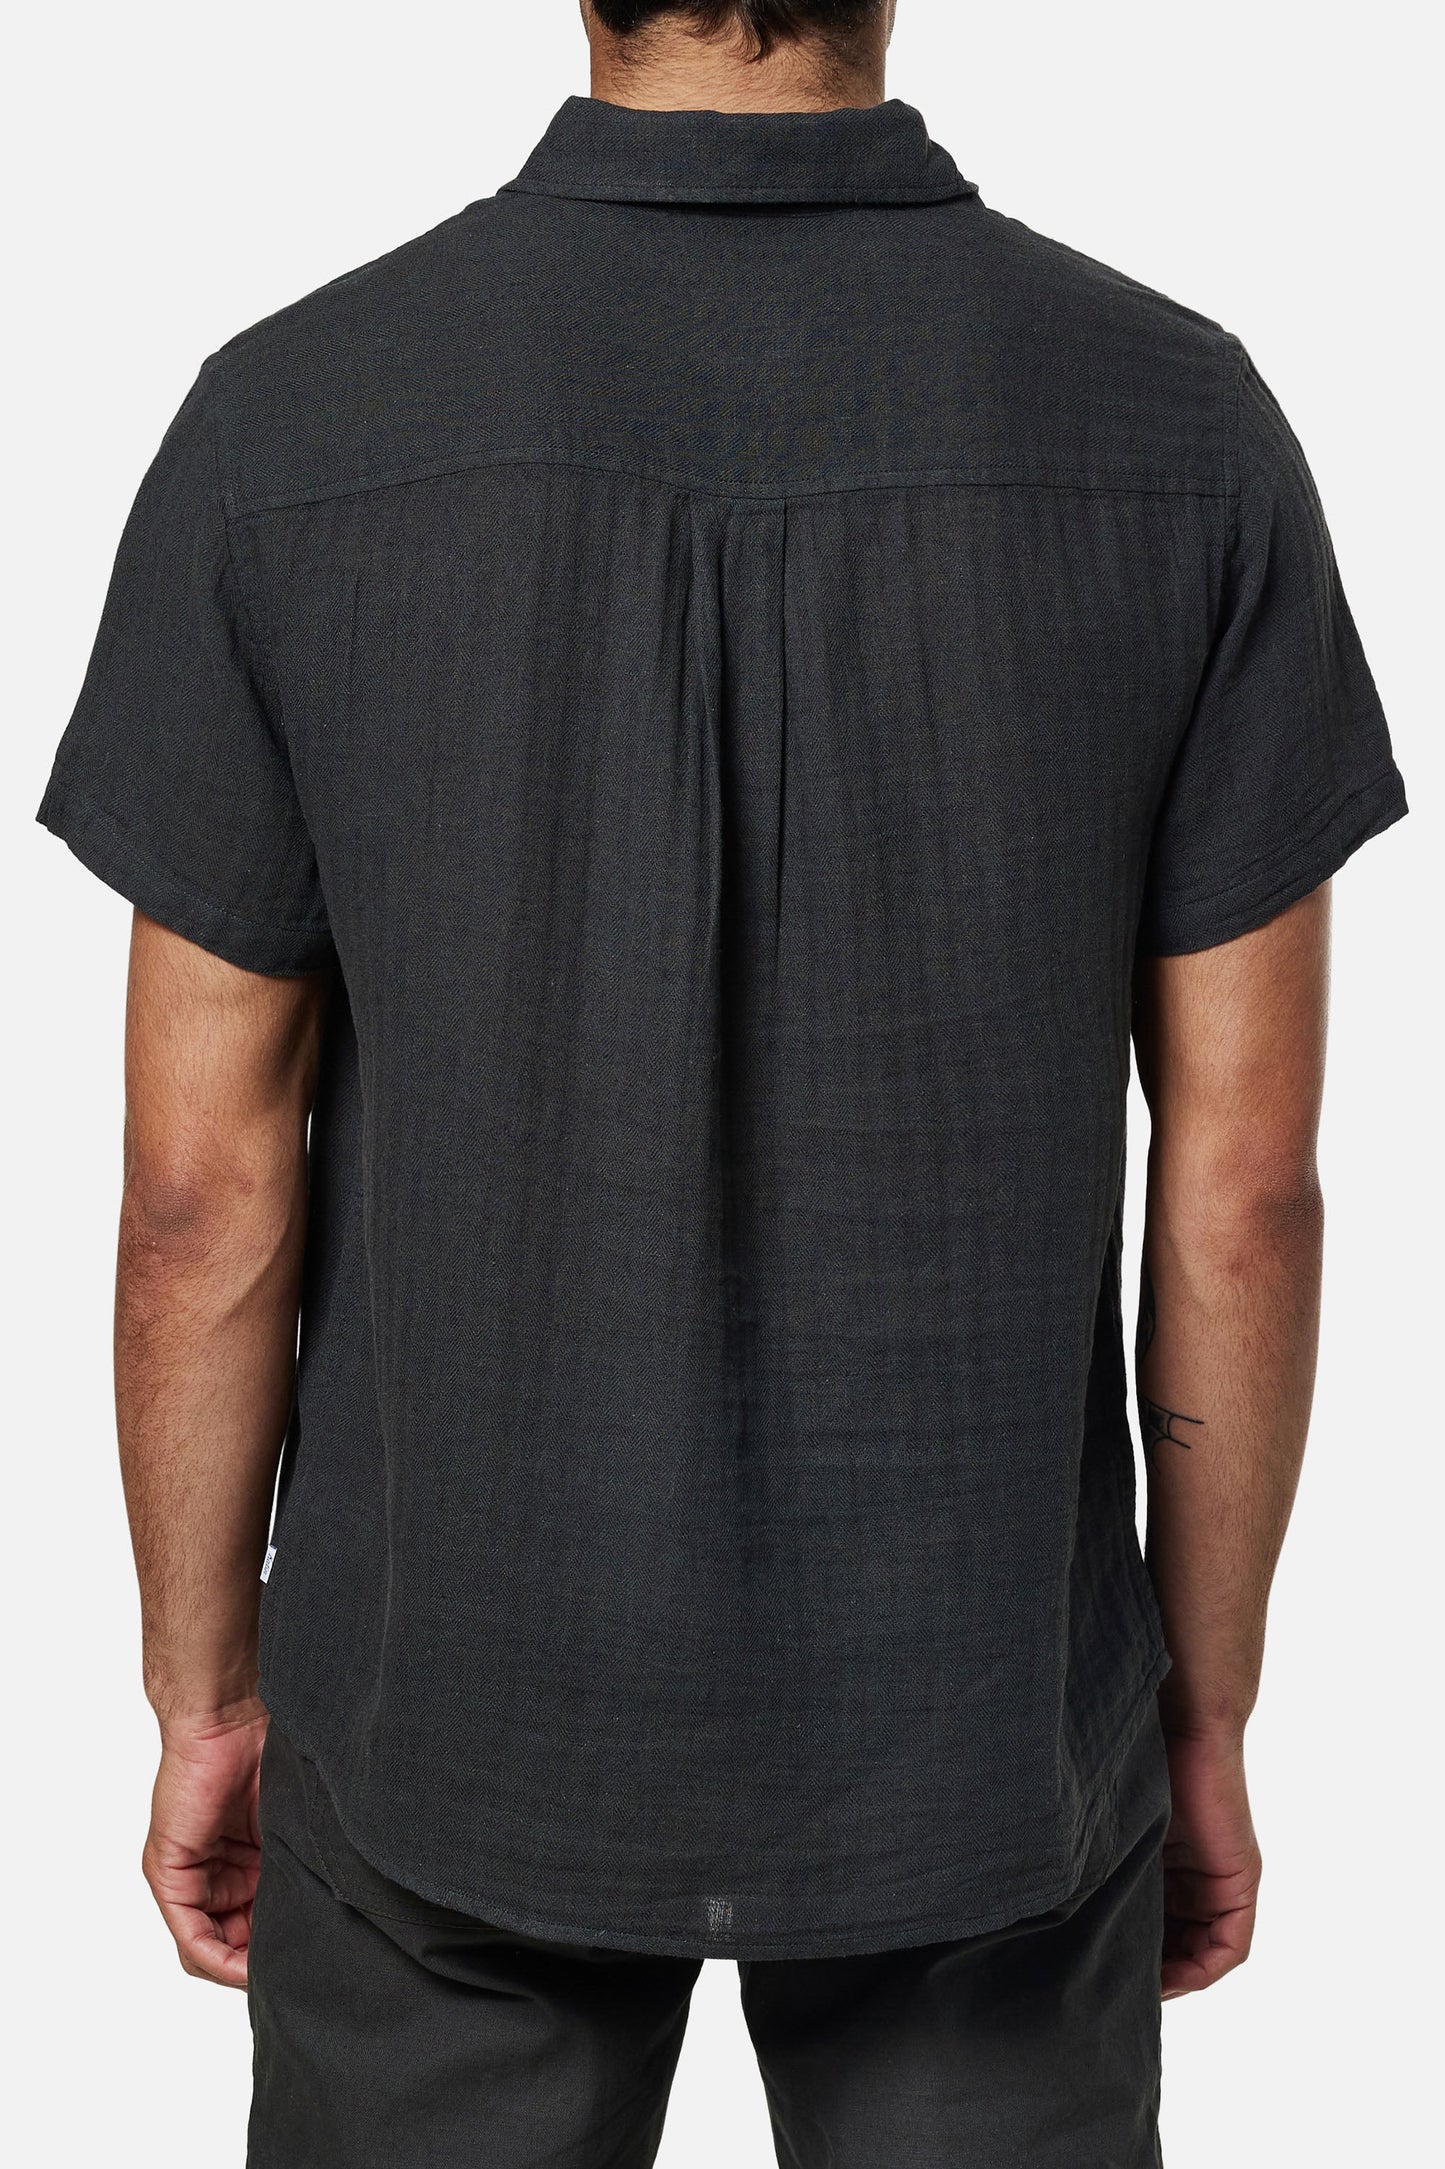 
                  
                    Camisa Alan Solid - Black Wash
                  
                